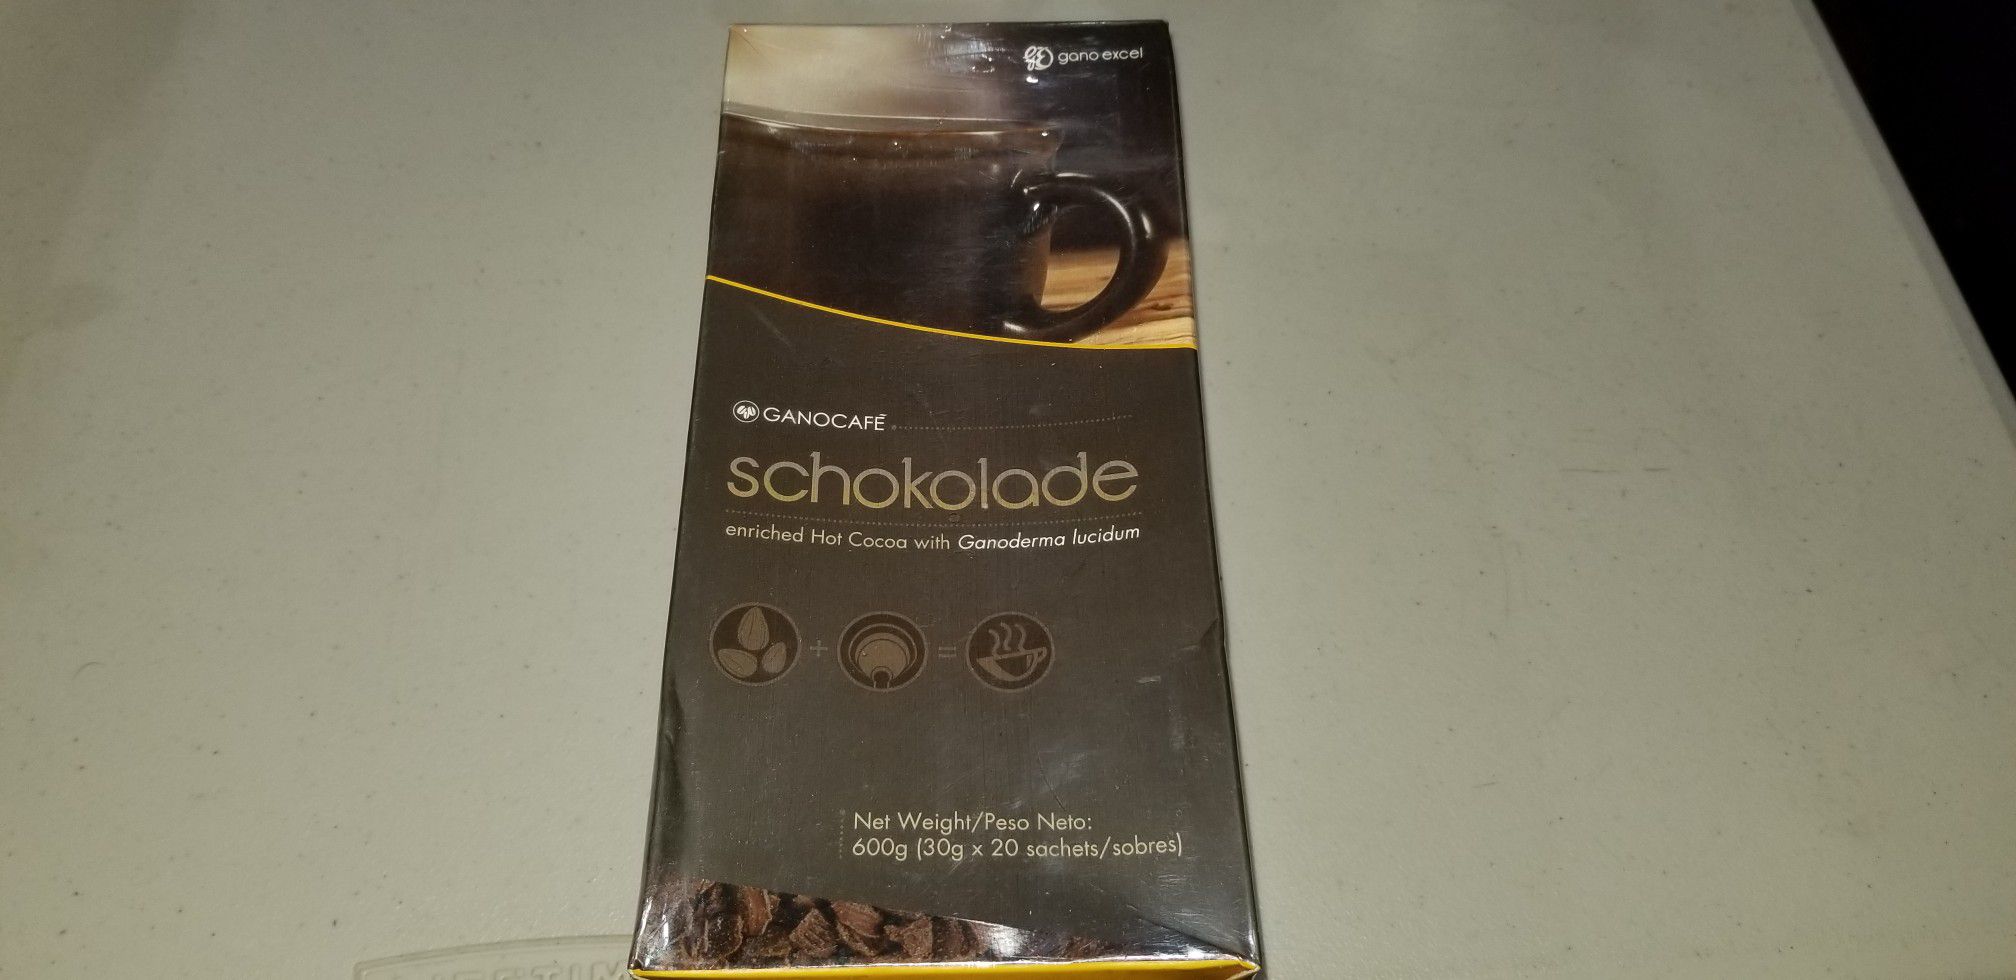 New ganocafe schokolade 20 sachets